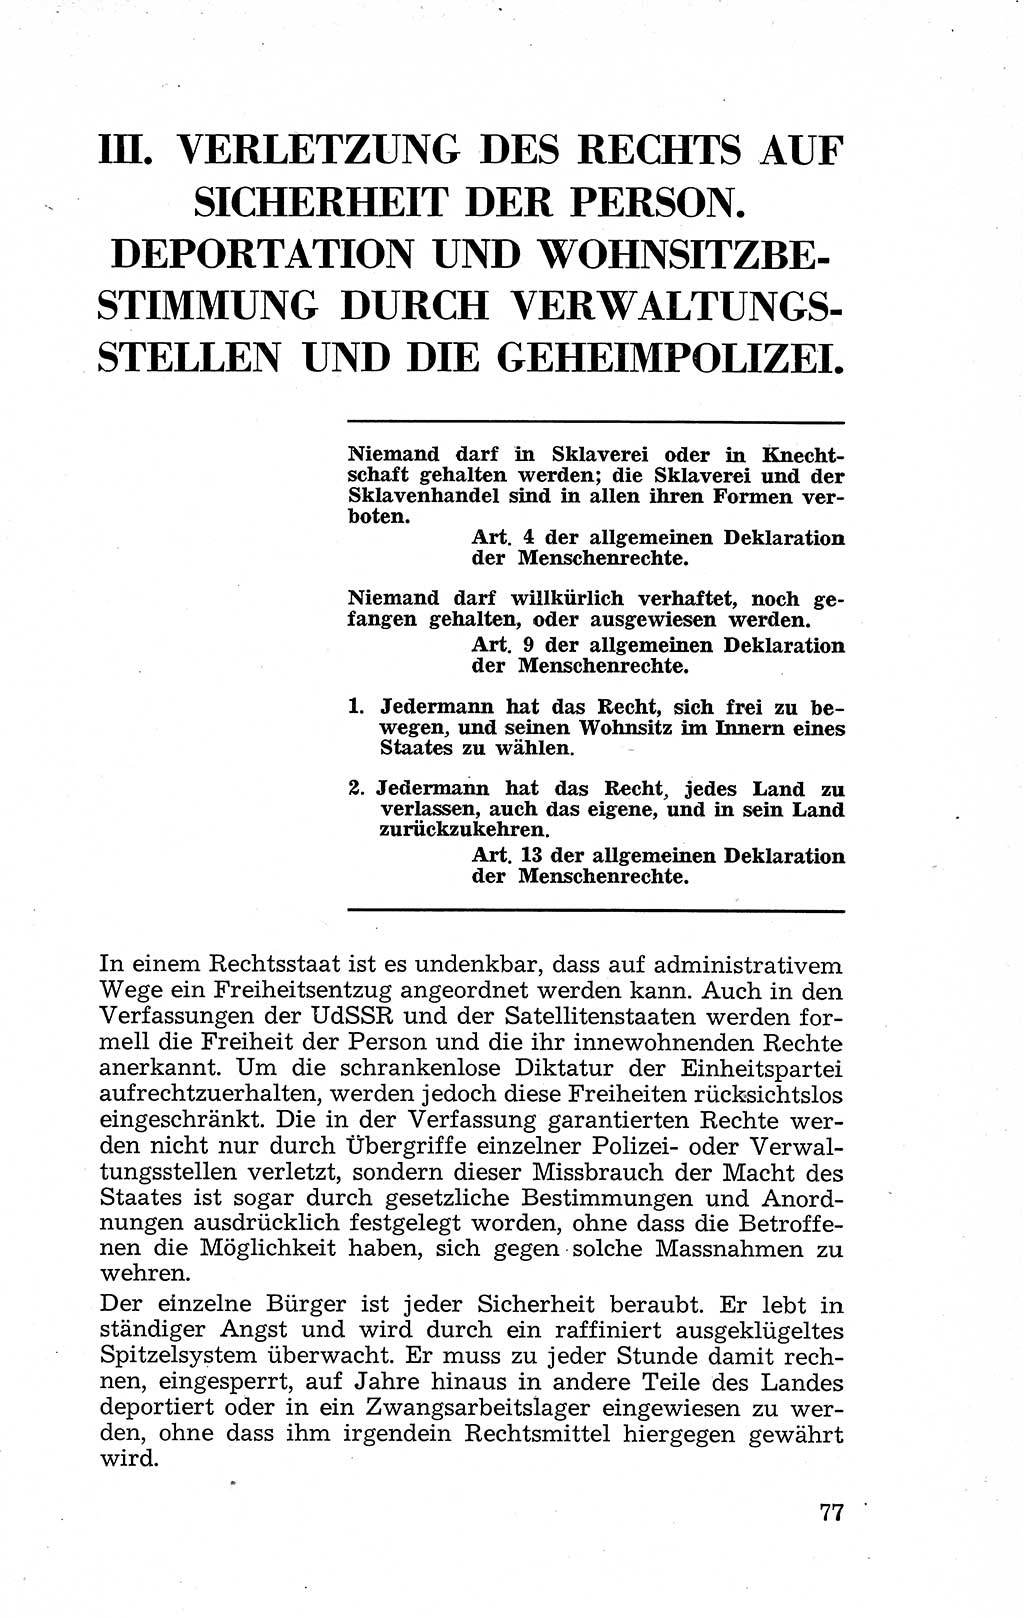 Recht in Fesseln, Dokumente, Internationale Juristen-Kommission [Bundesrepublik Deutschland (BRD)] 1955, Seite 77 (R. Dok. IJK BRD 1955, S. 77)